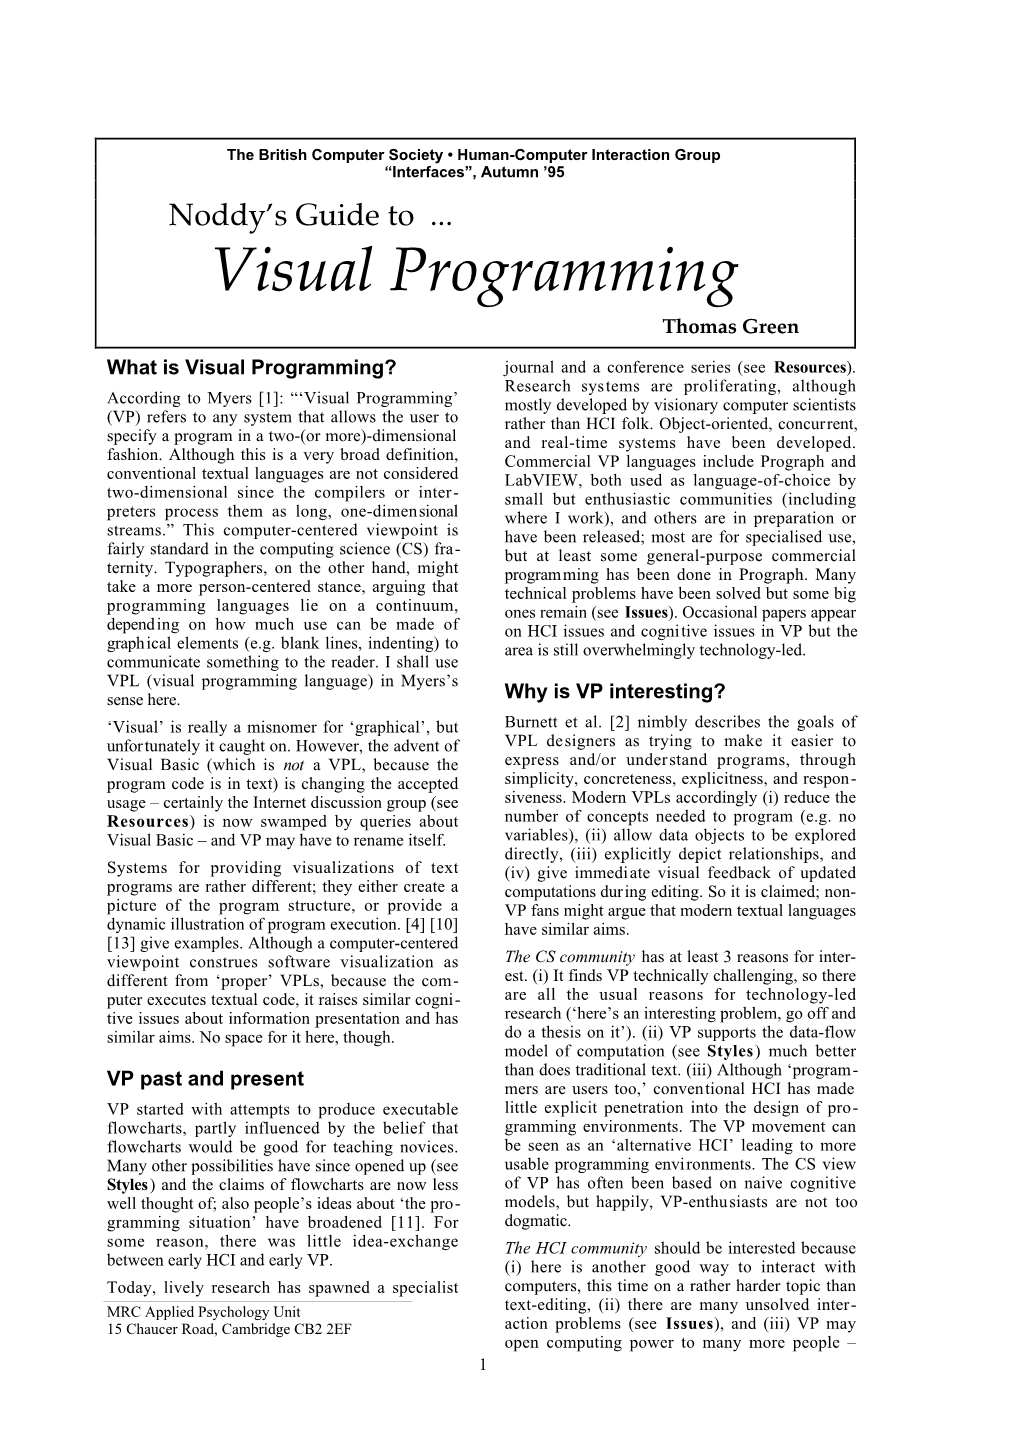 Visual Programming Thomas Green